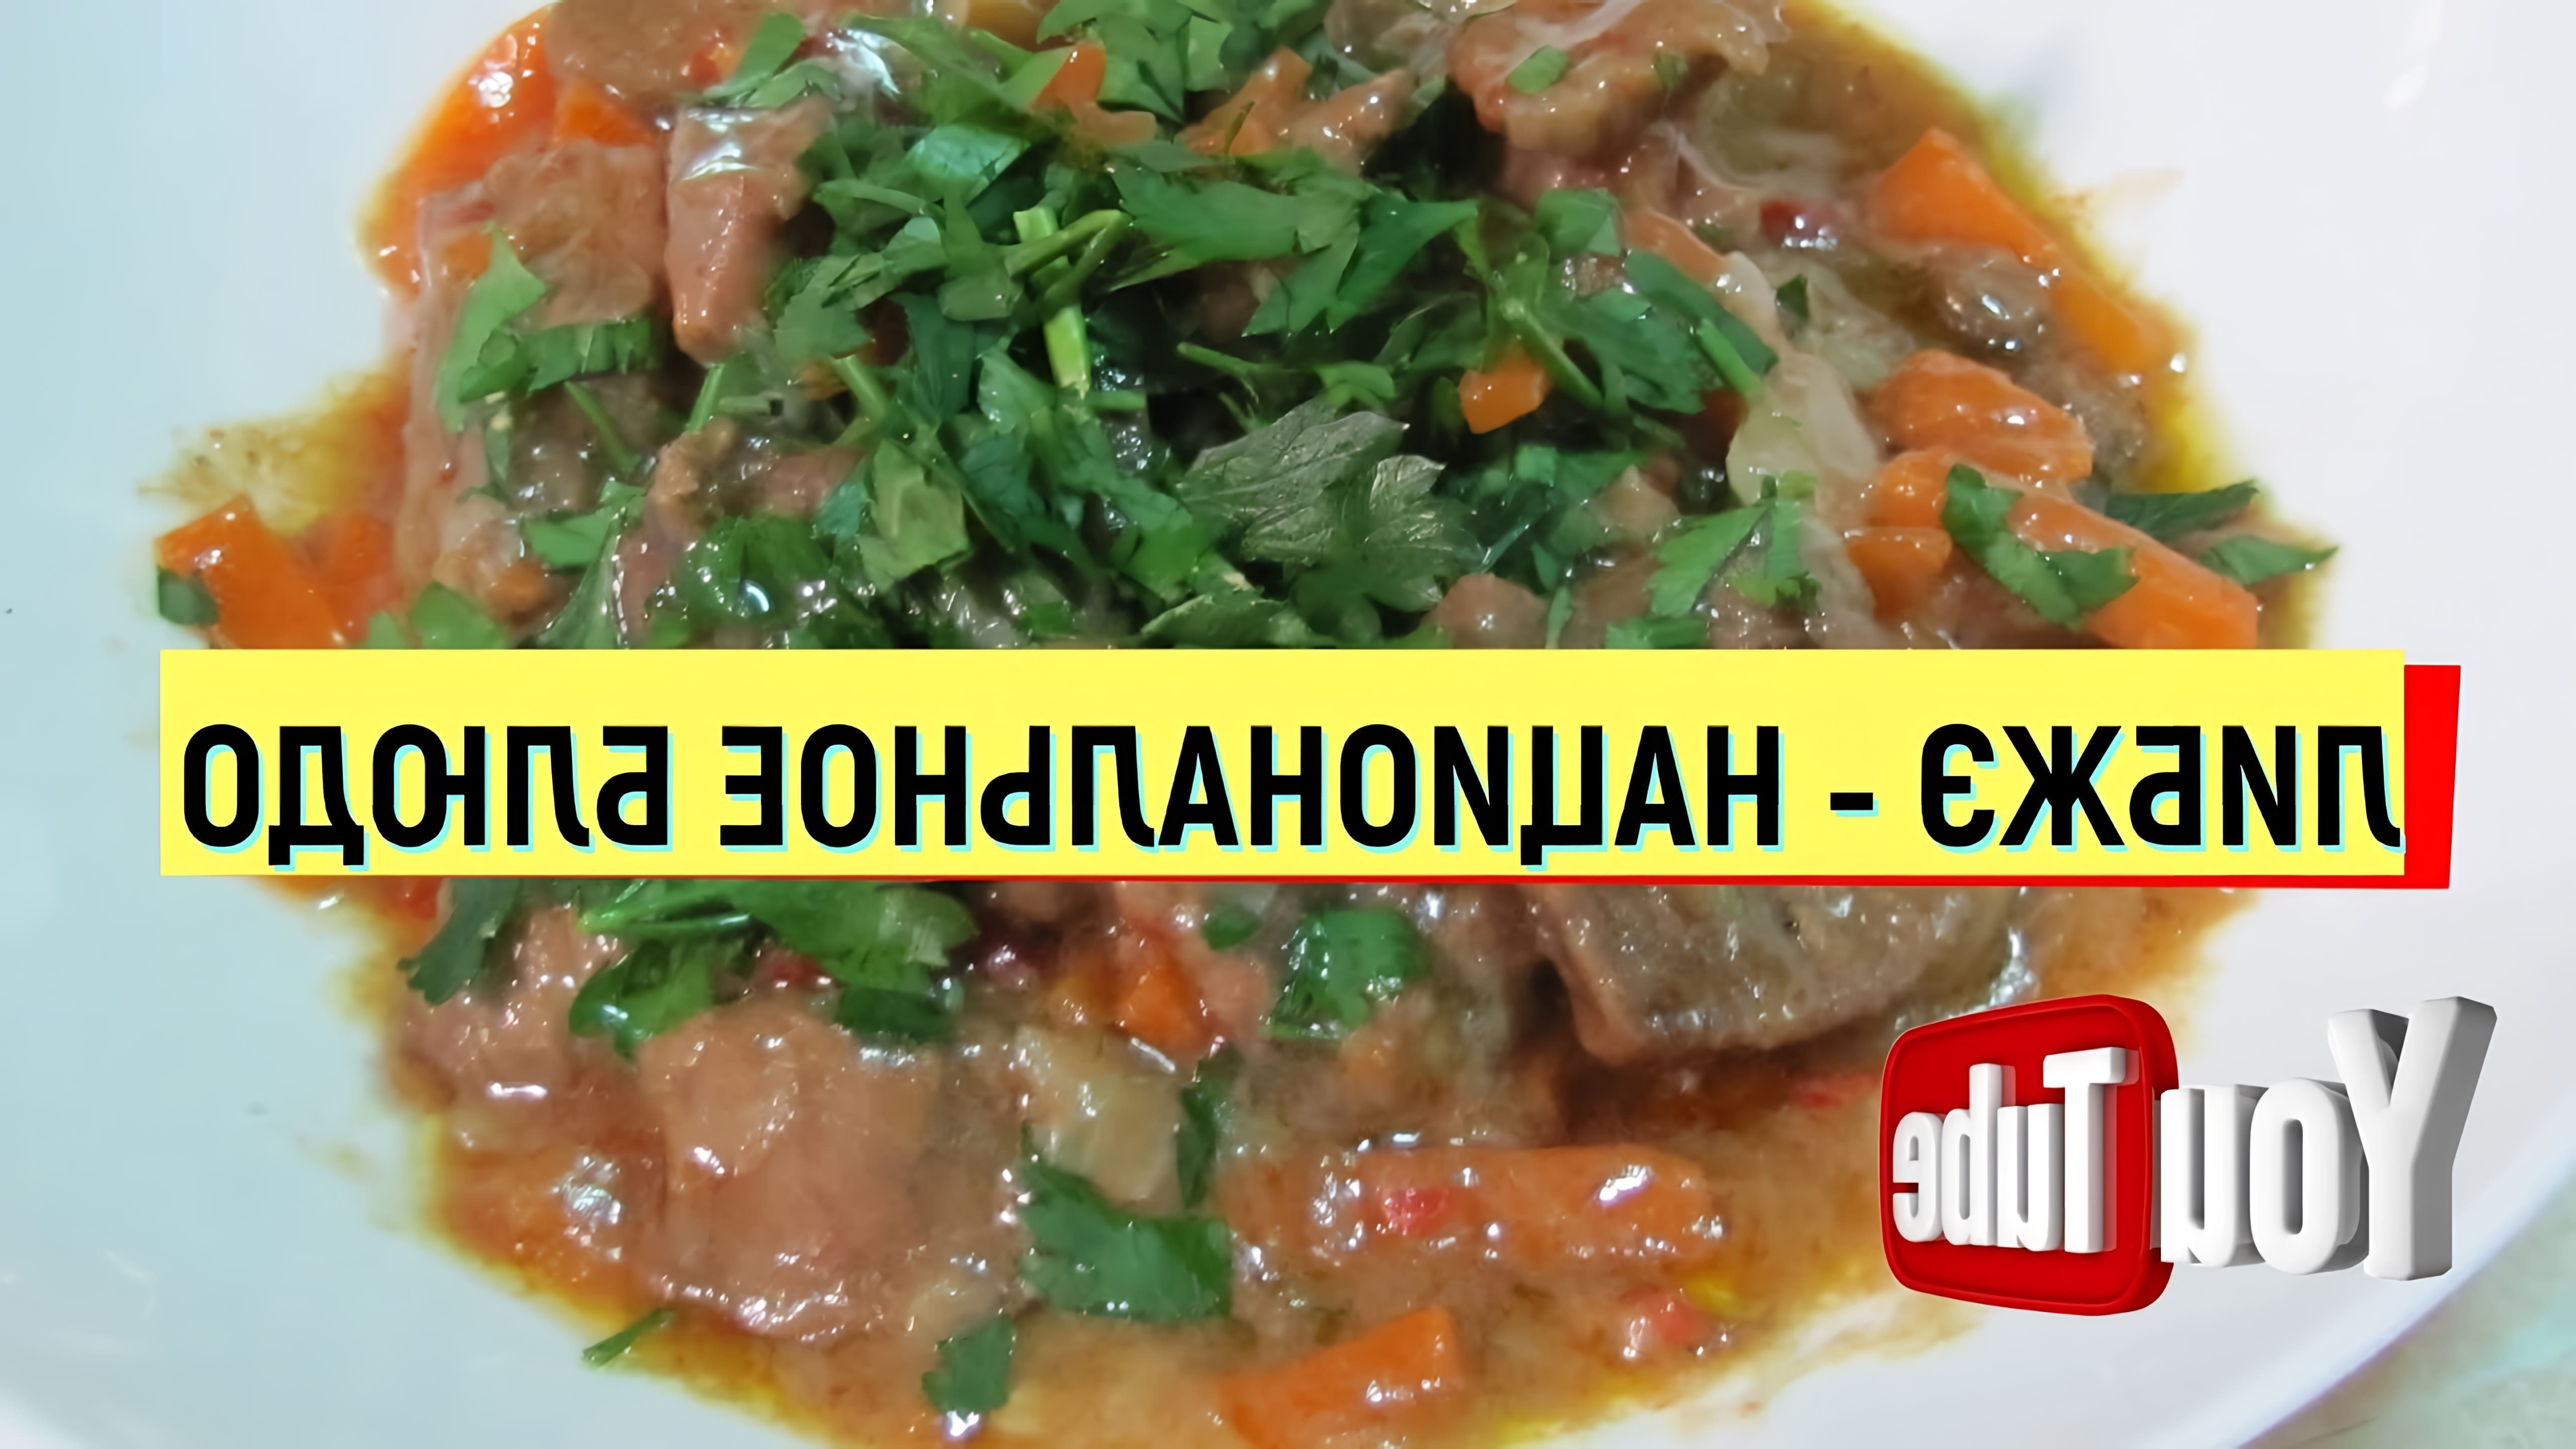 В данном видео демонстрируется процесс приготовления национального блюда балкарцев - либжэ